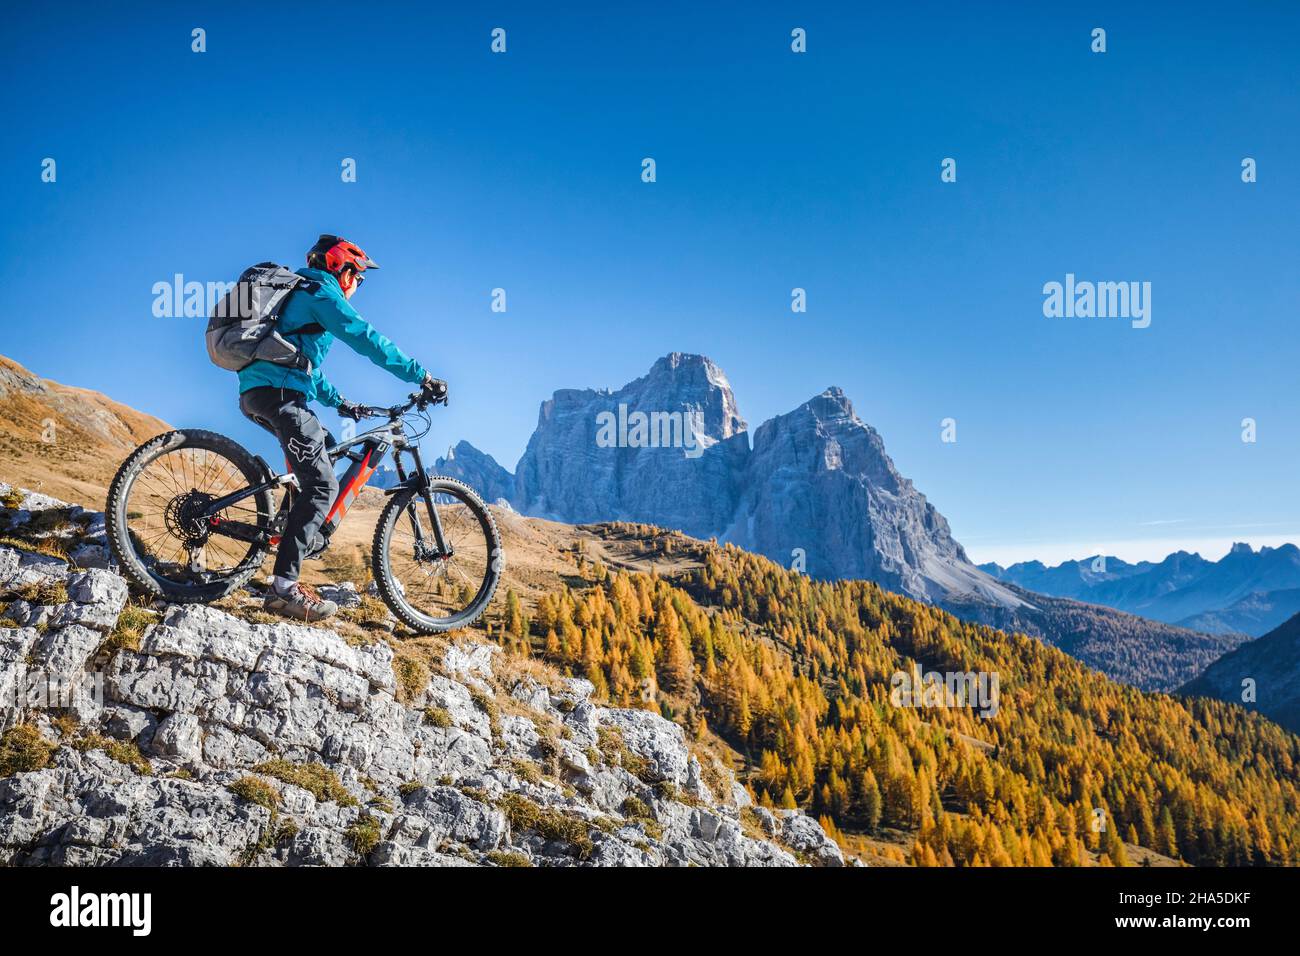 Auf den Wegen der dolomiten mit dem E-Bike, ein Moment der Kontemplation in Richtung pelmo, dolomiten, san vito di cadore, belluno, venetien, italien Stockfoto